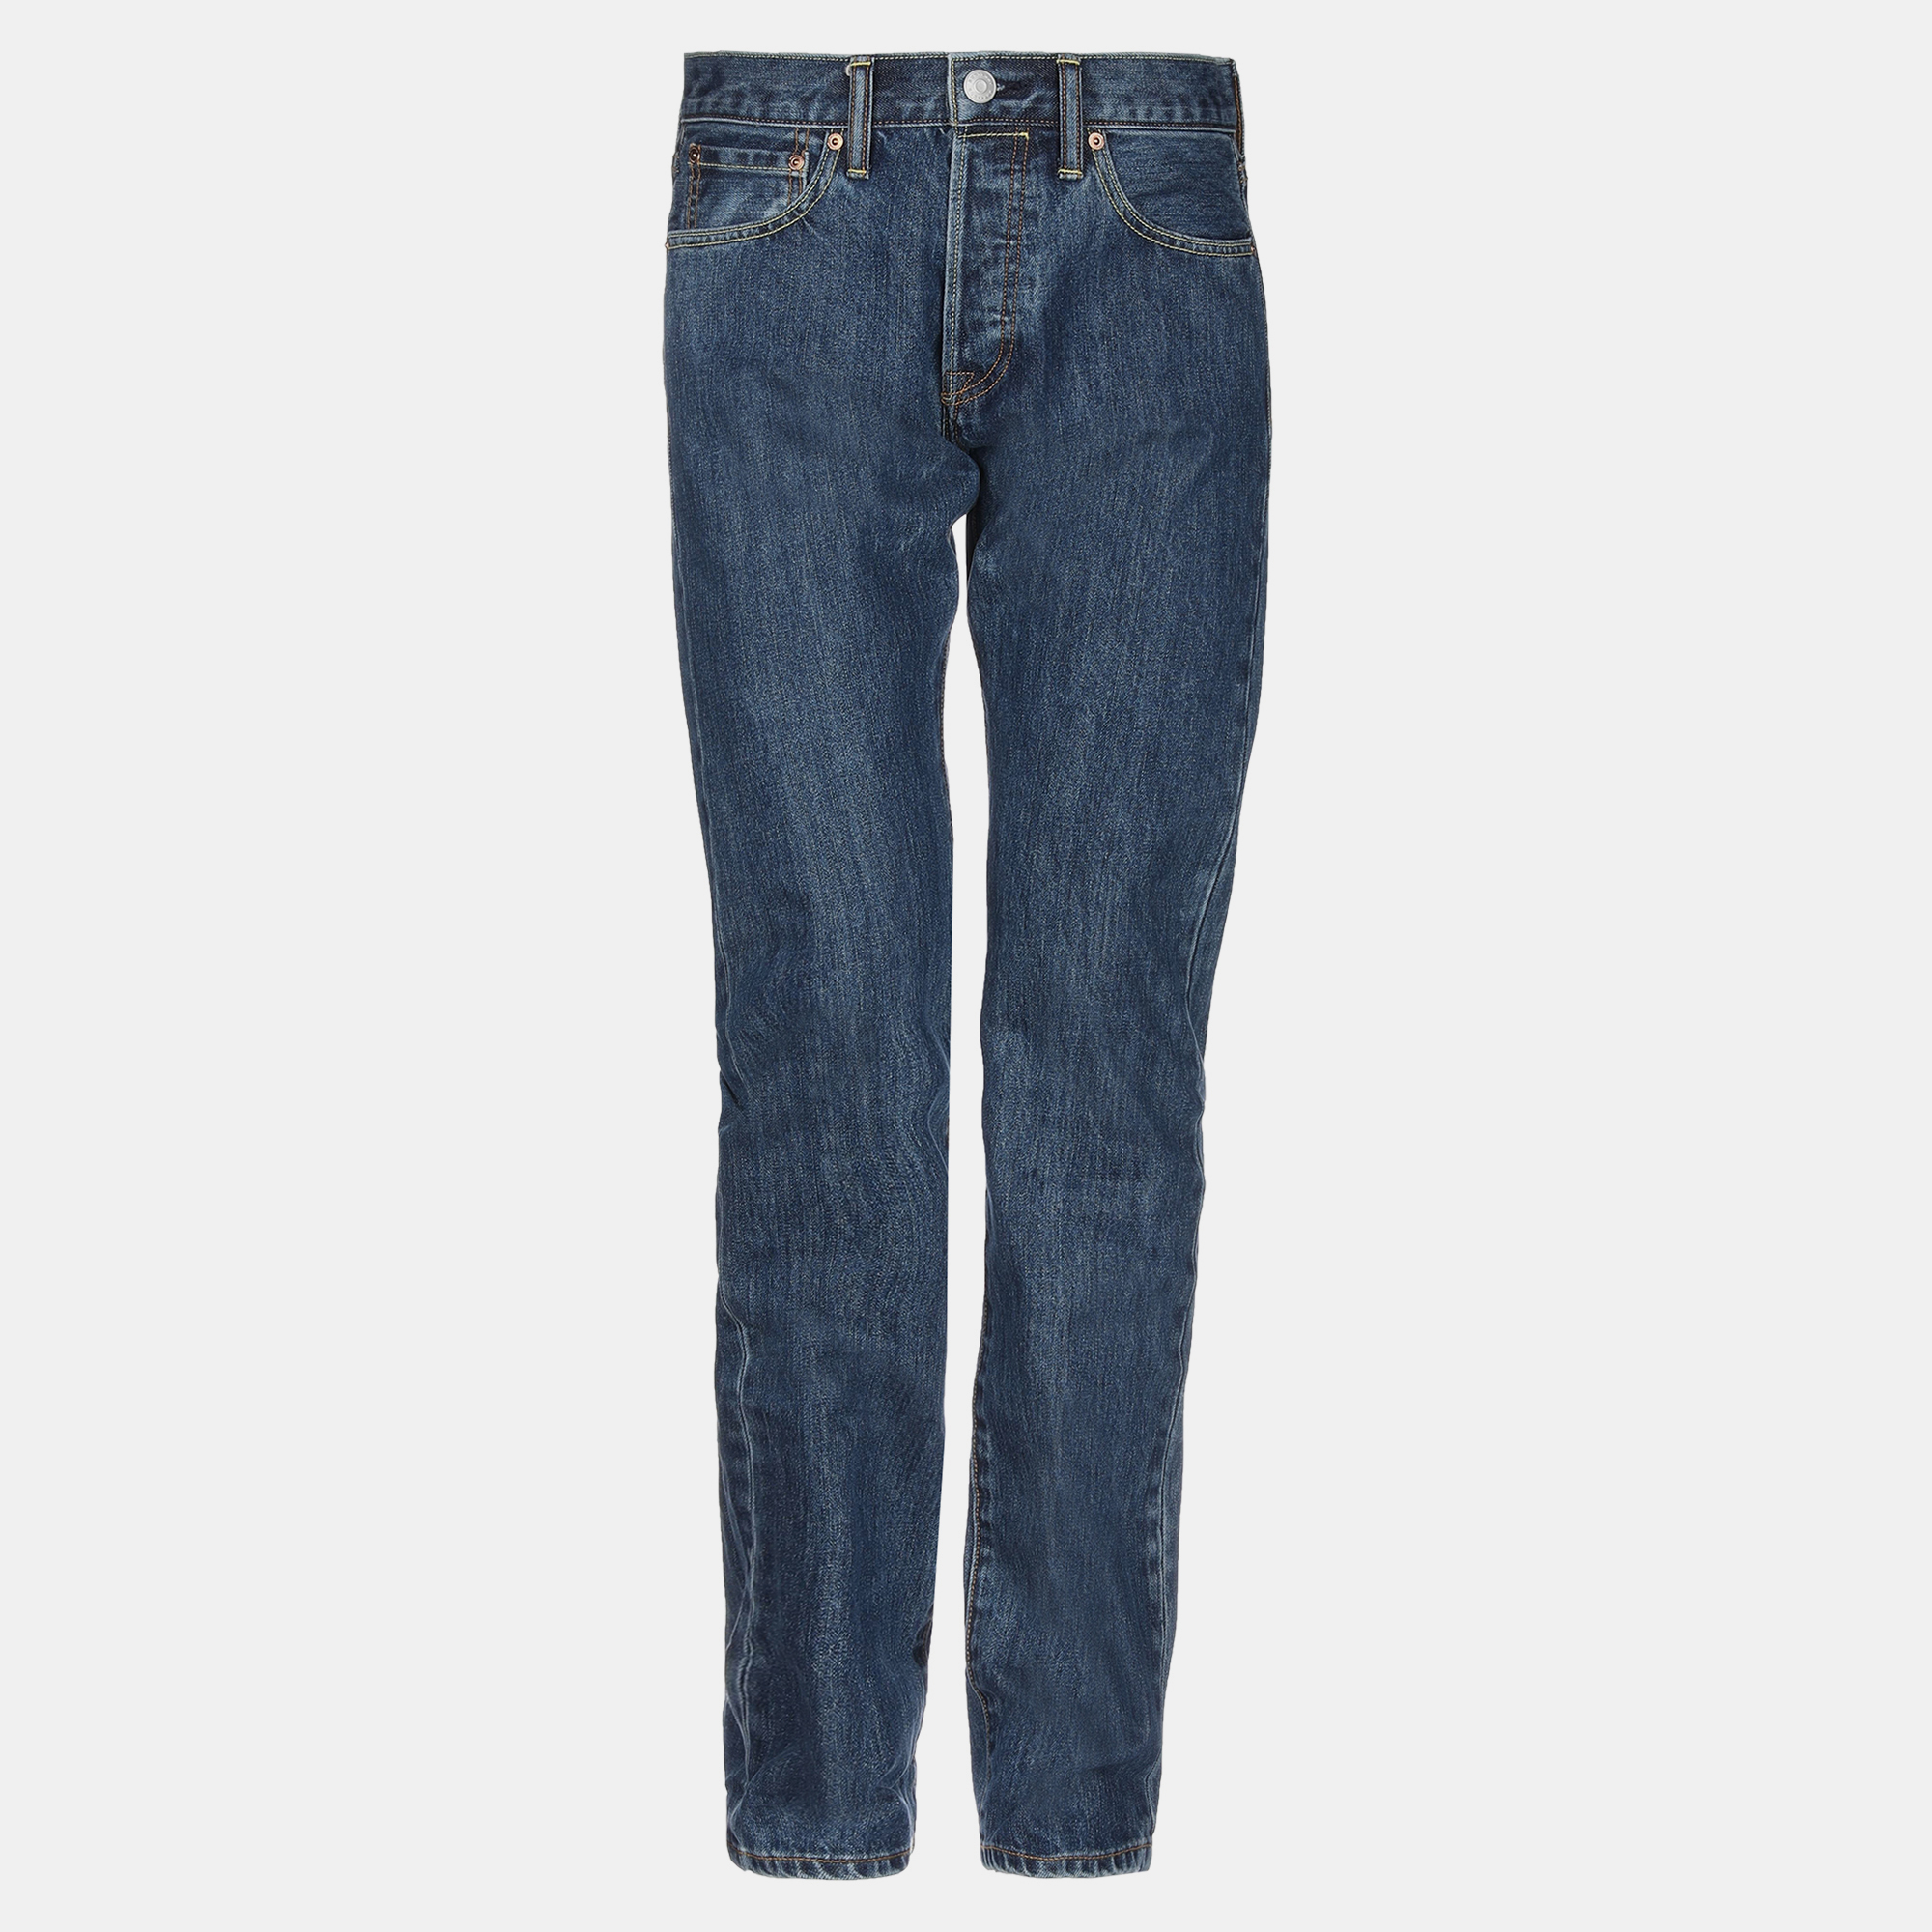 Burberry cotton jeans 30